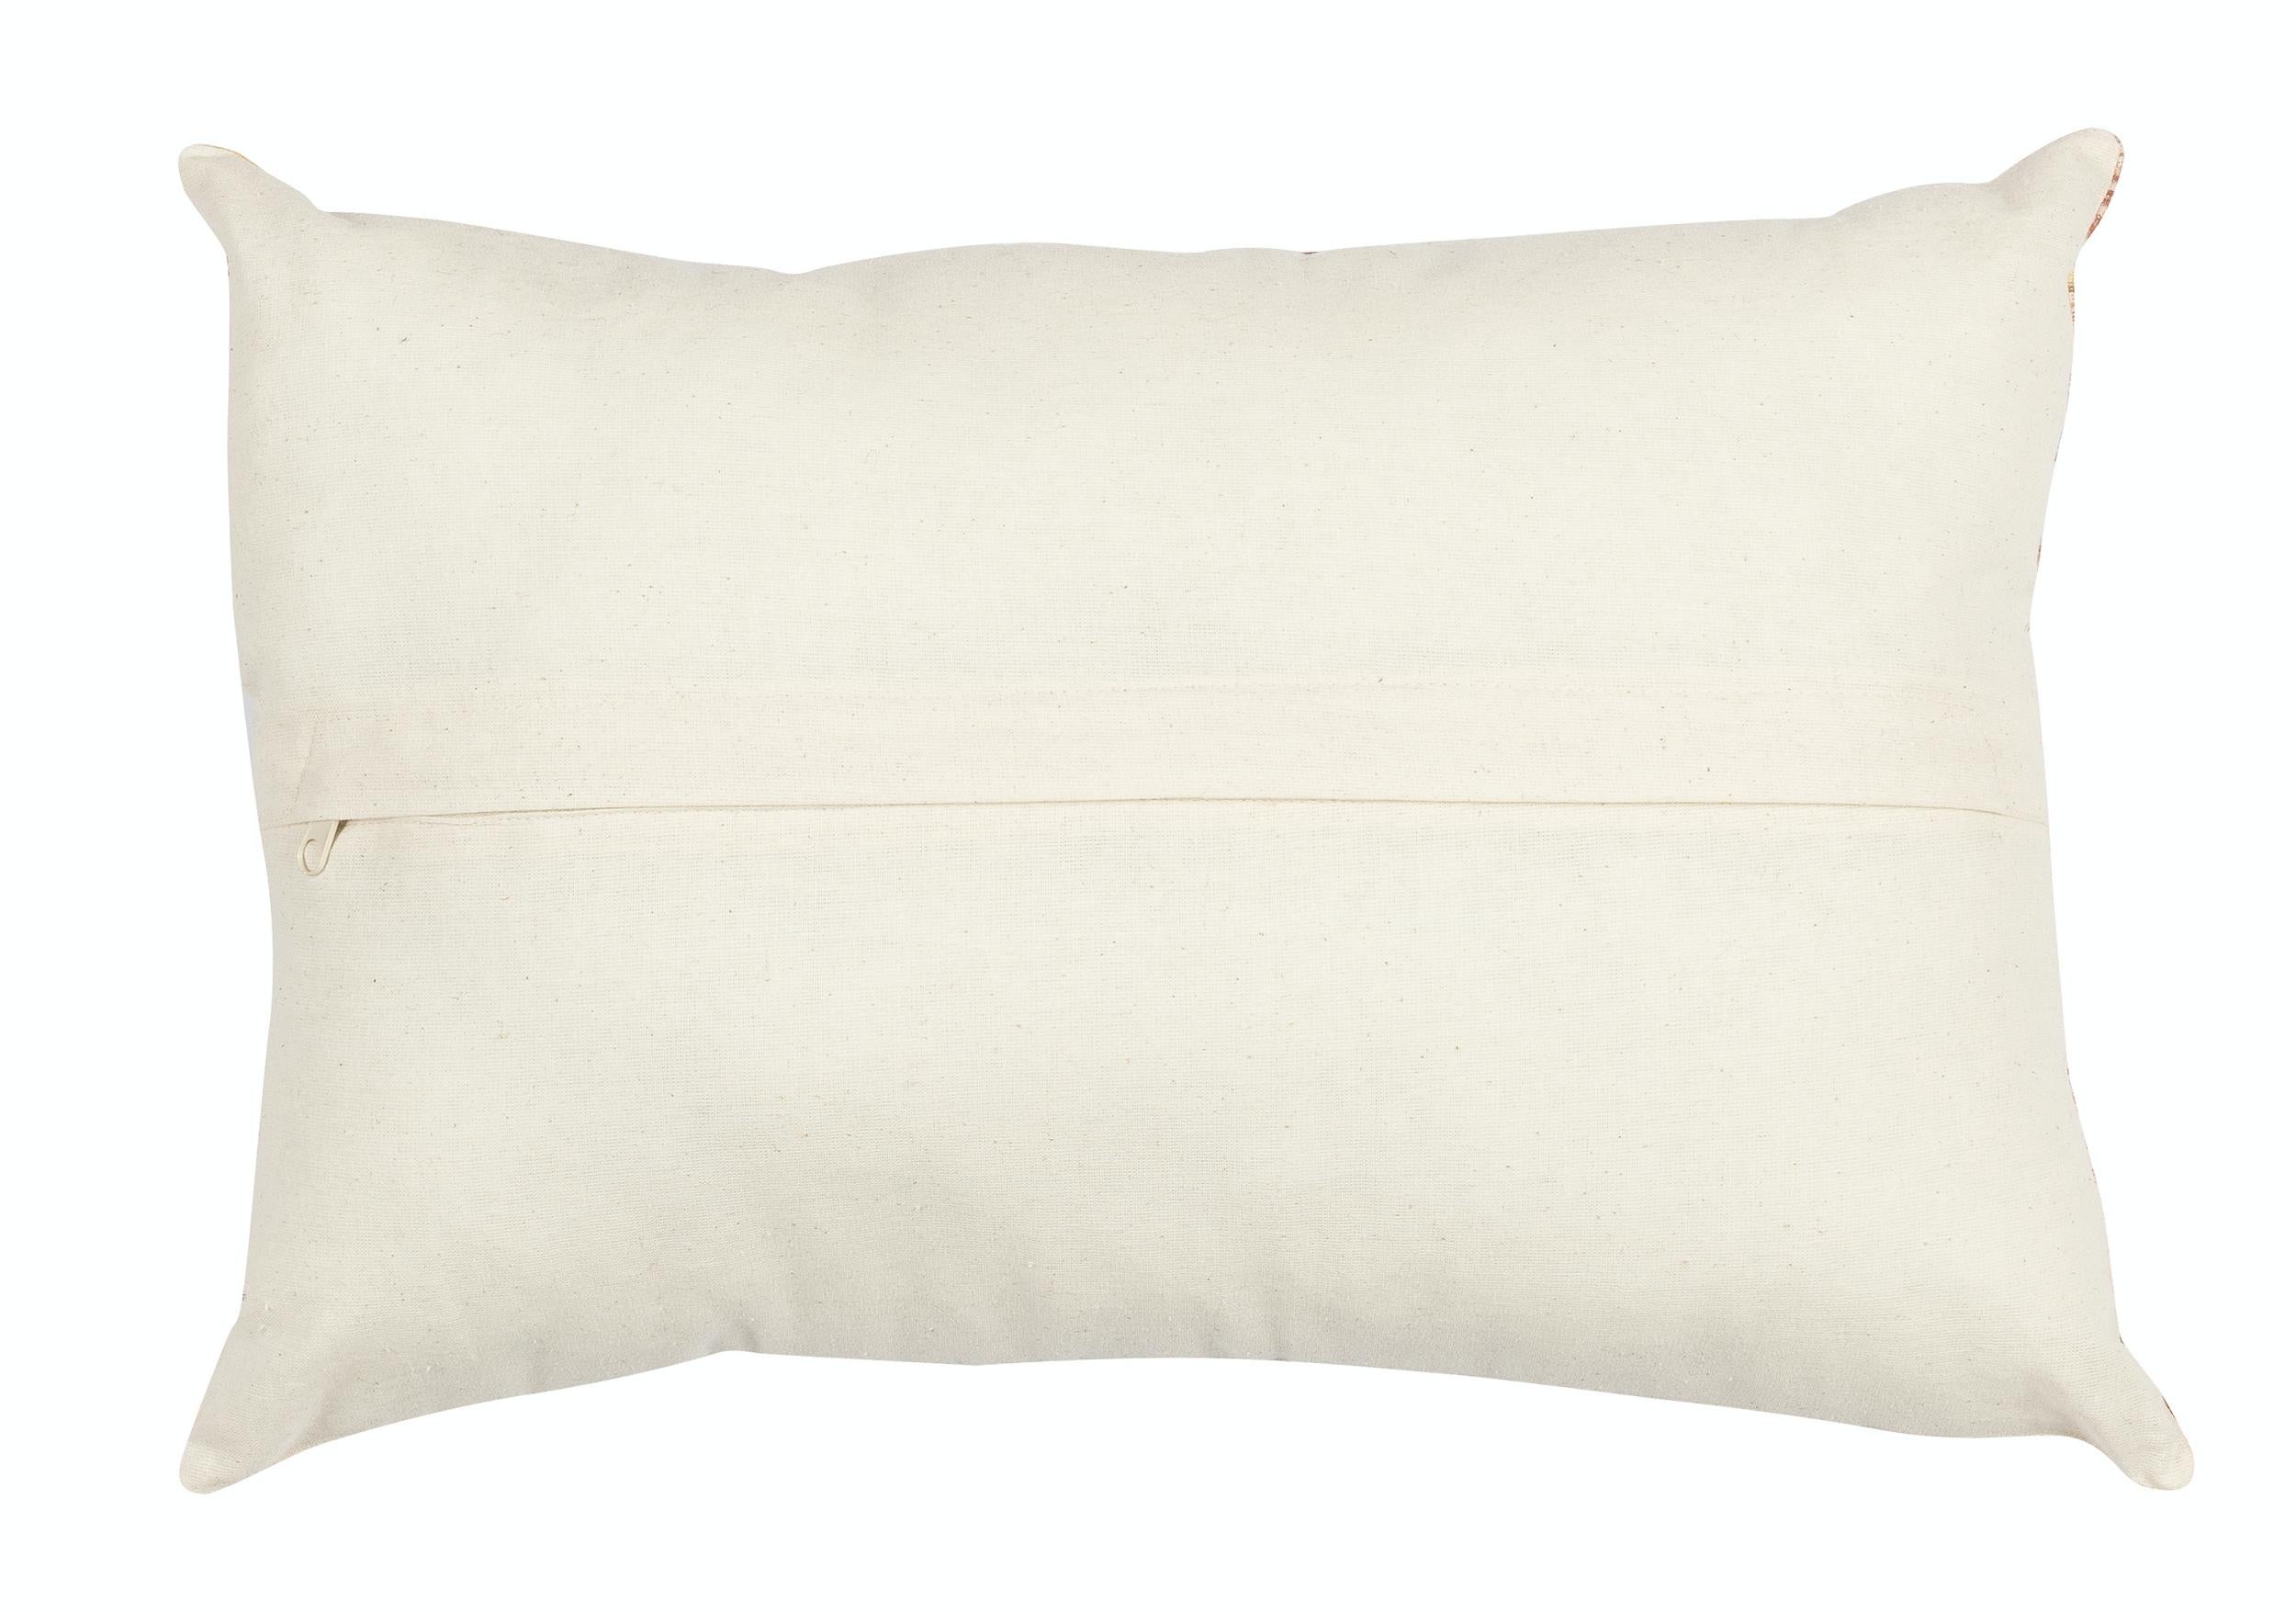 Bohemian Decorative Home Decor Lace Pillow, Vintage Ikat Handcraft Cotton Cushion Cover For Sale